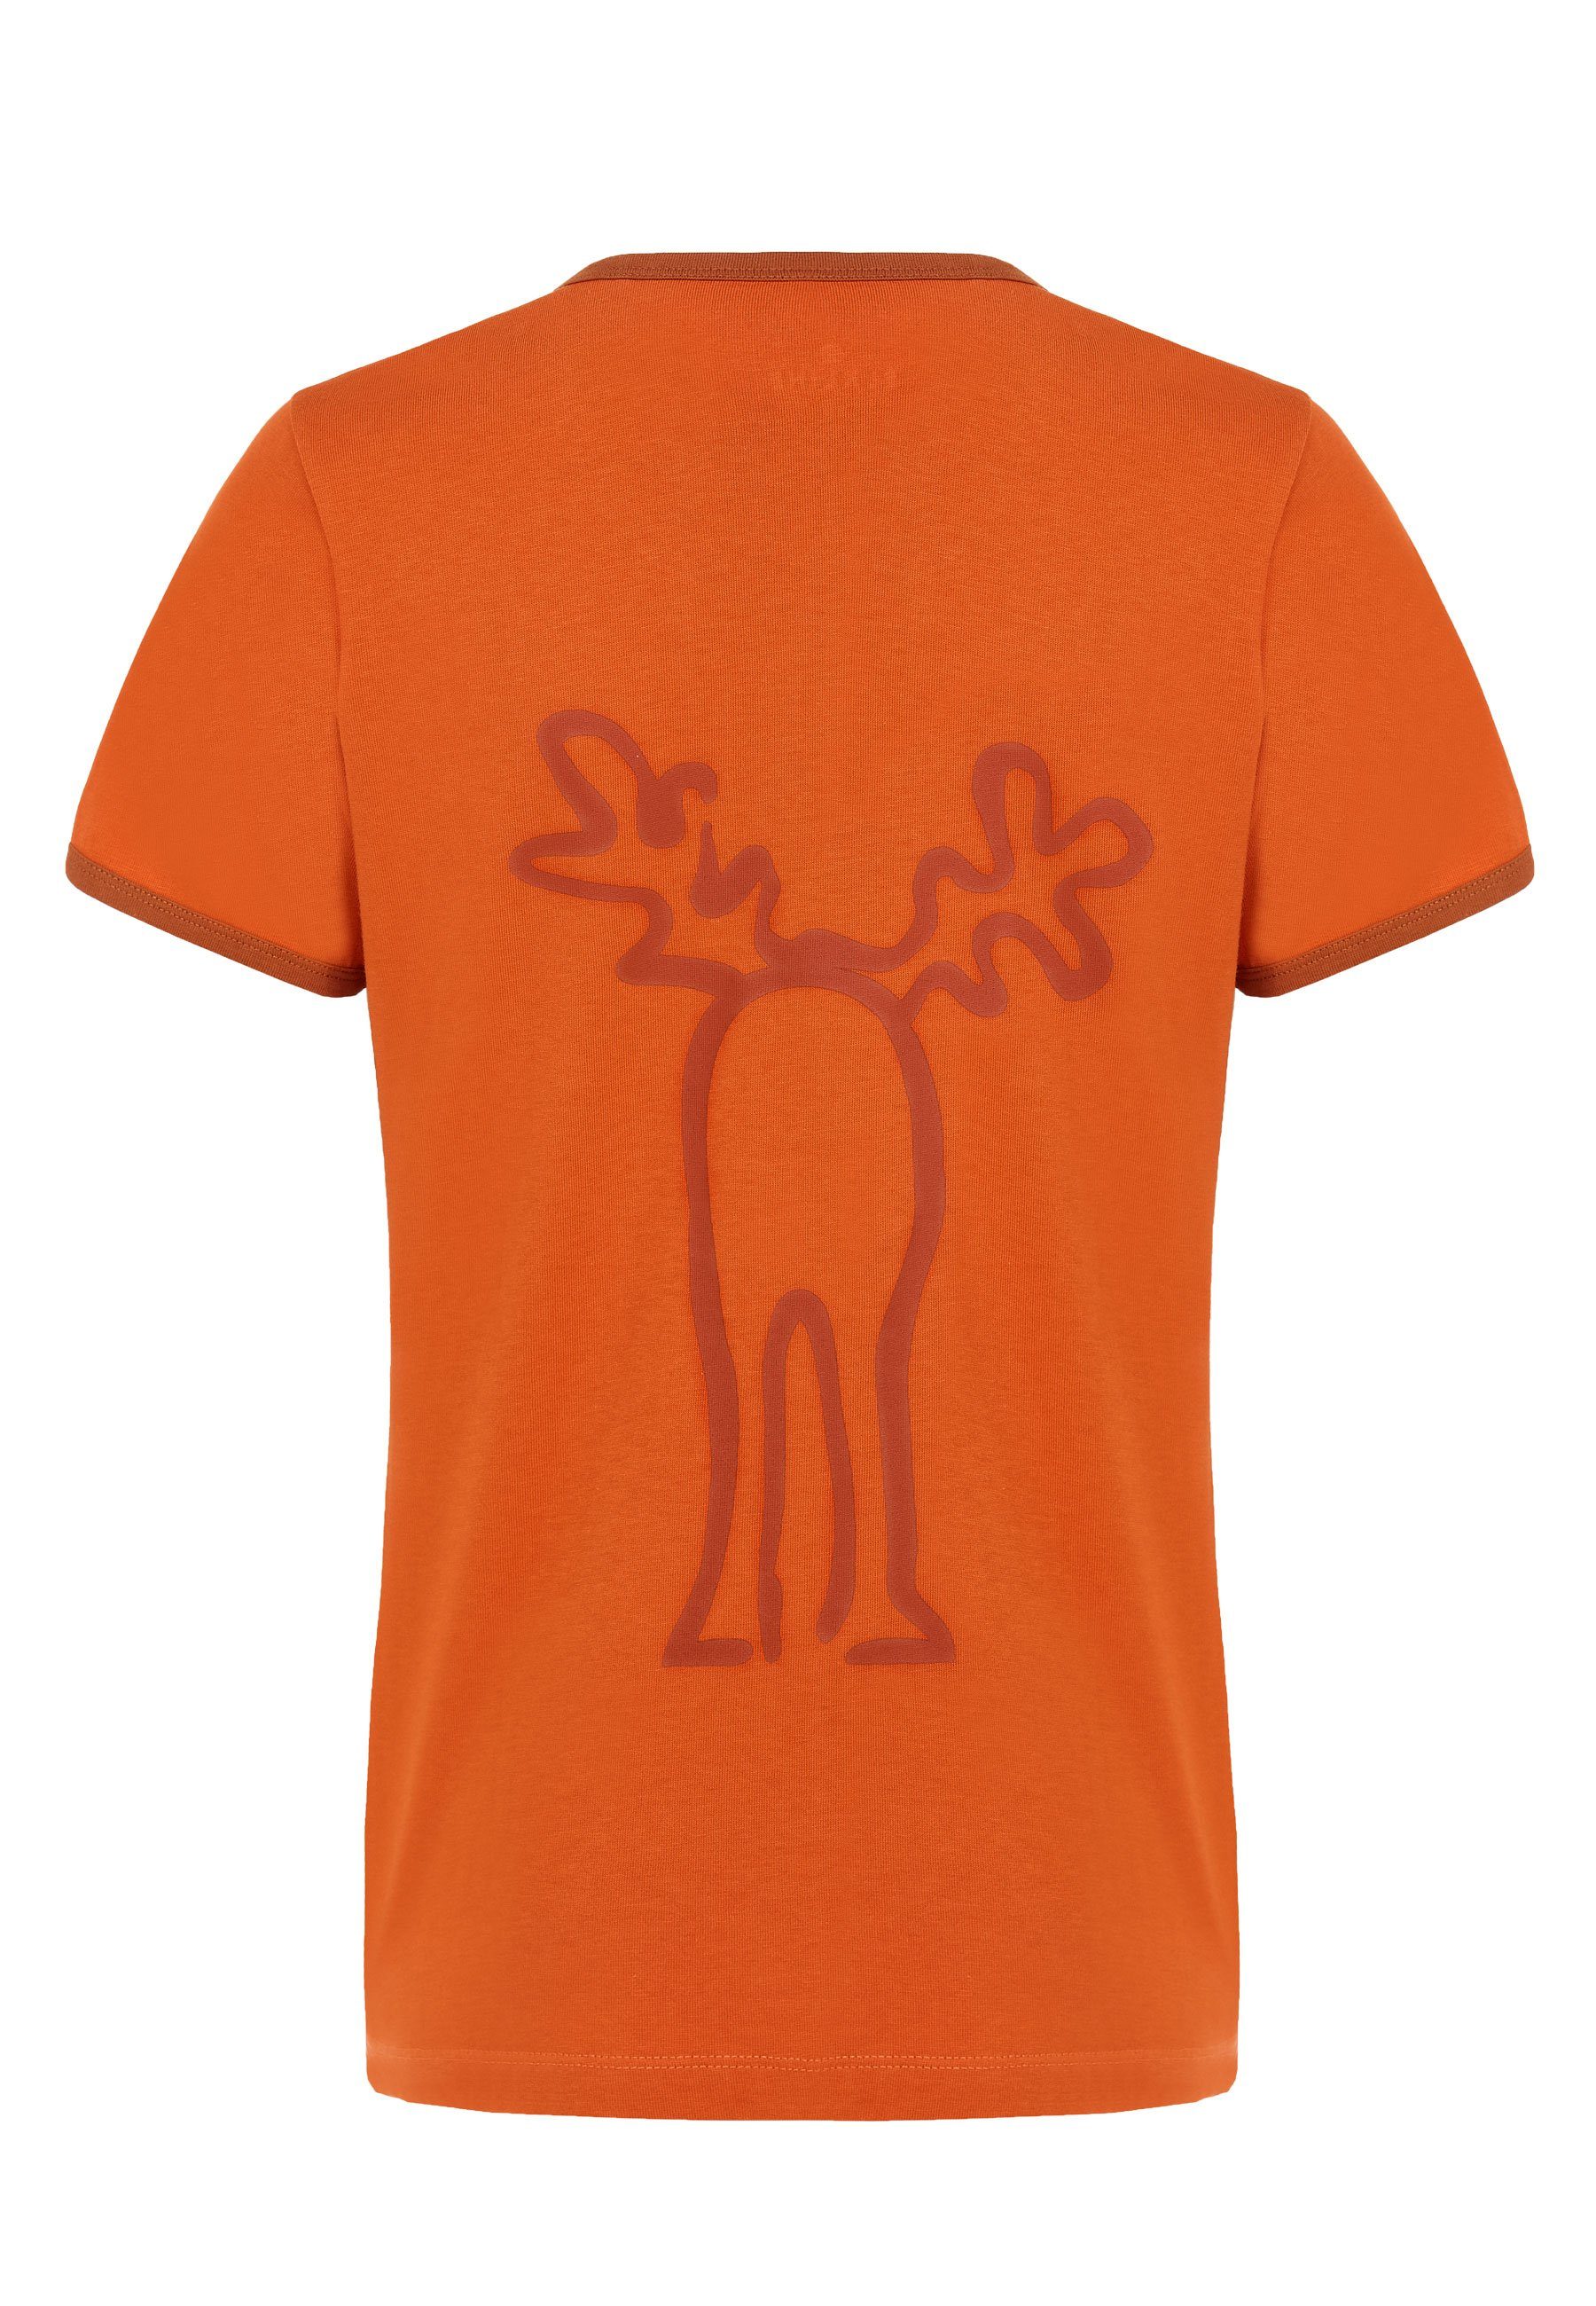 Elkline orange Brust T-Shirt Print Rudolfine rust - darkorange Rücken Elch Retro und